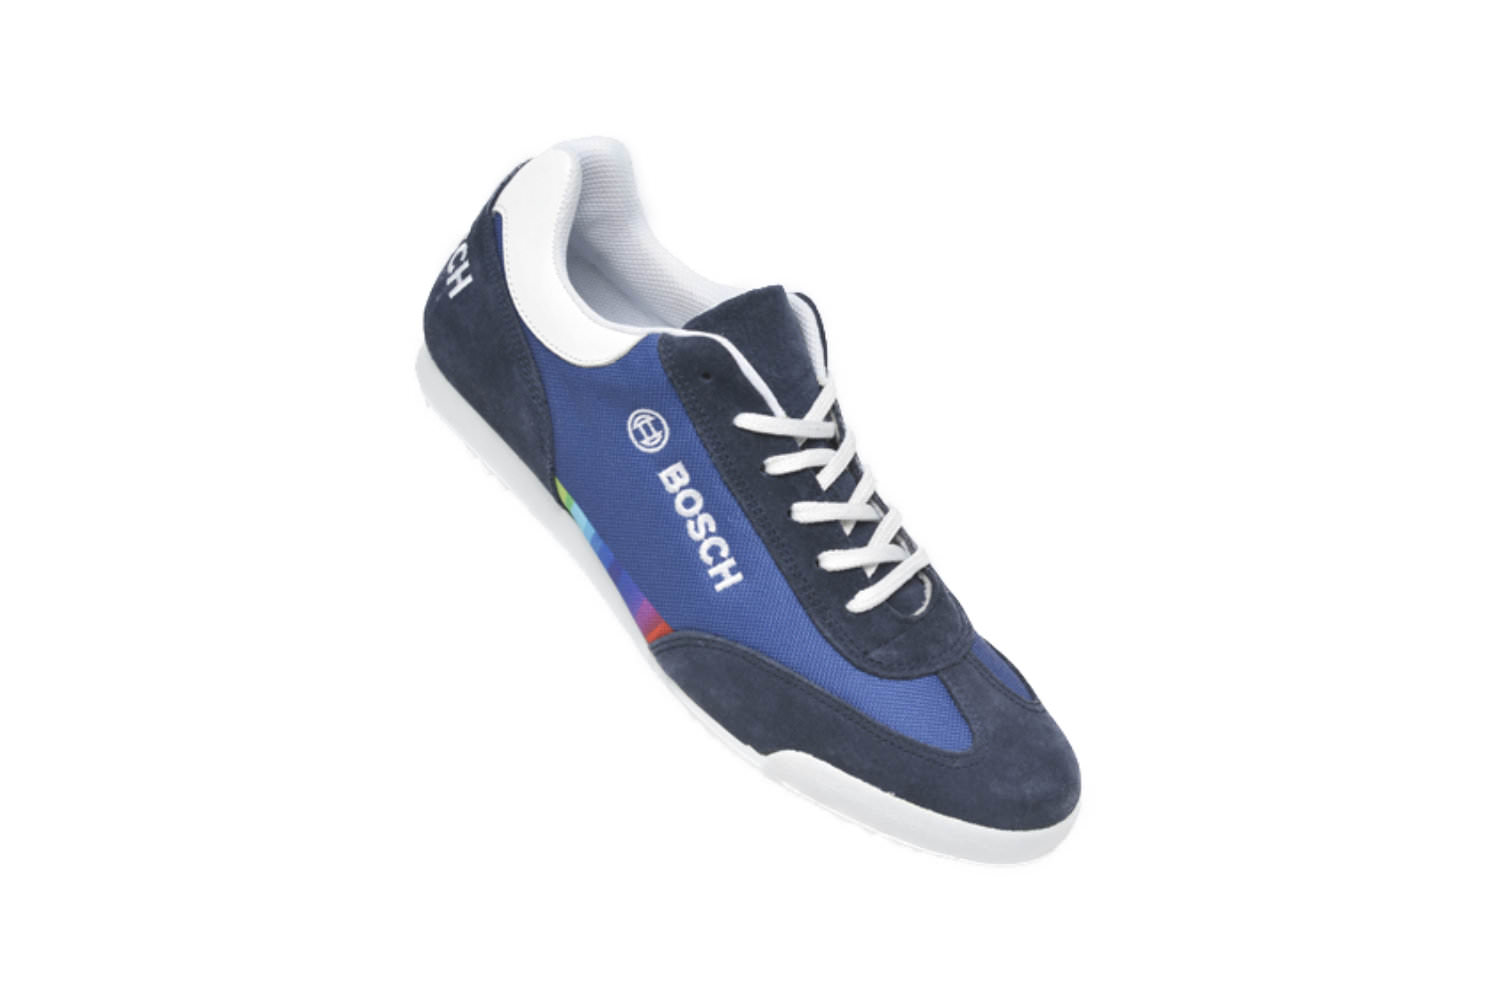 Sneaker Myflow für Firmen in Blautönen Werbeartikel Werbung auf Schuhen